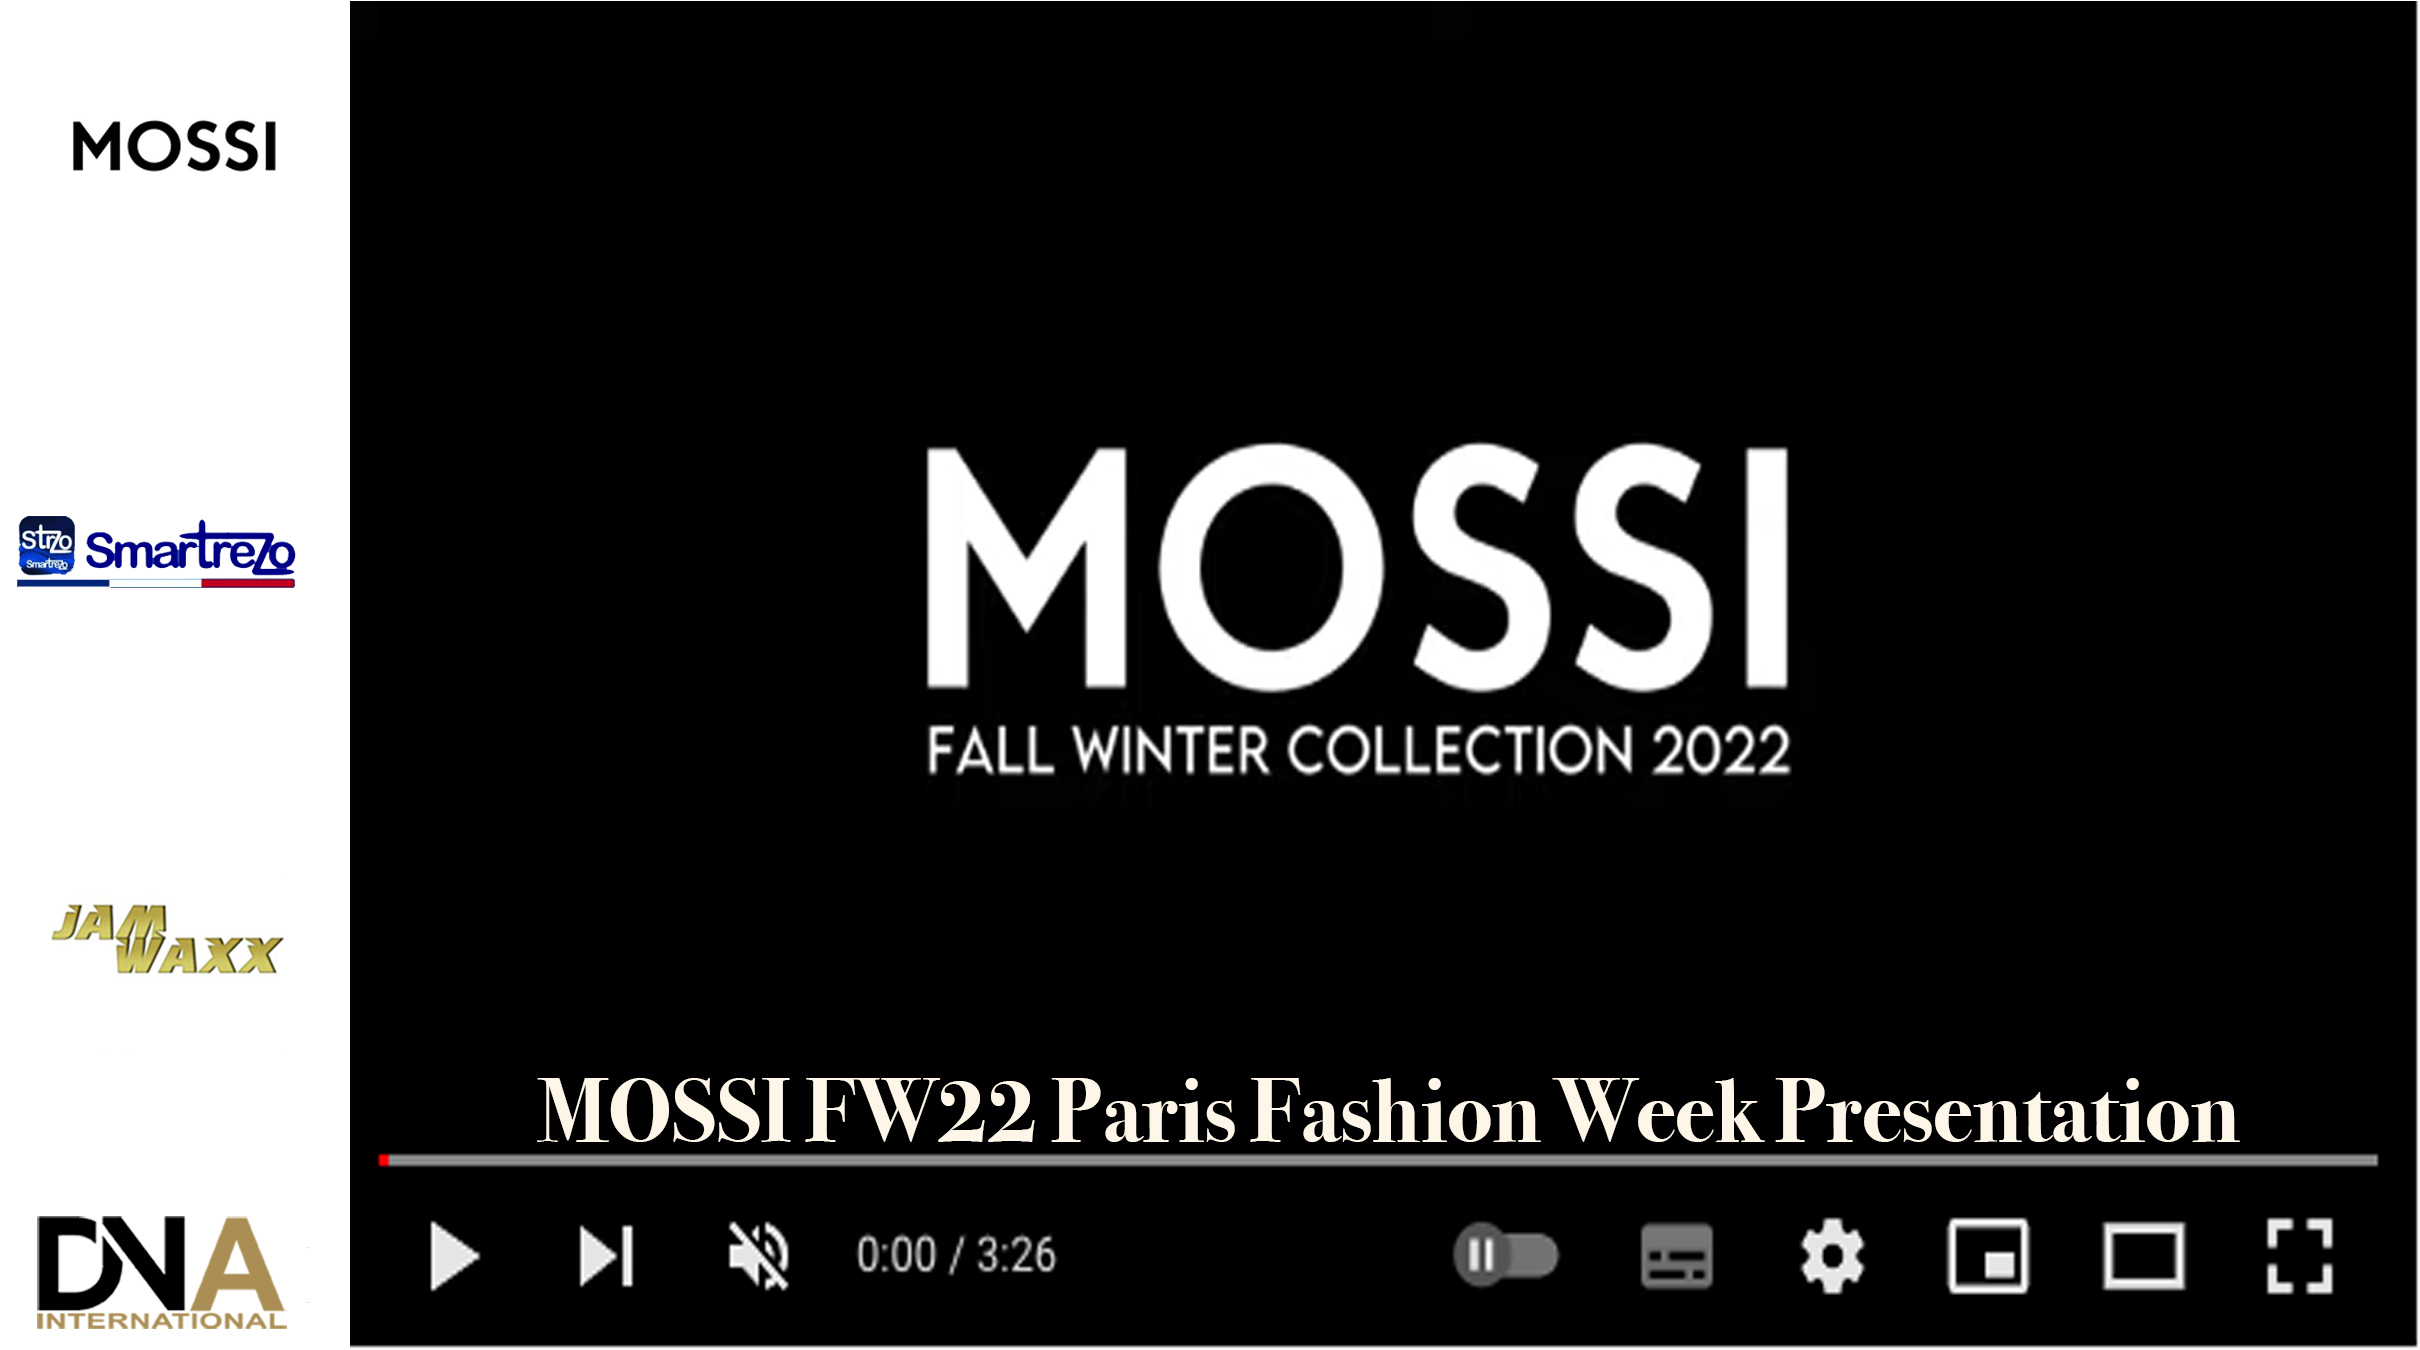 DN-AFRICA-MOSSI-FW22-Paris-Fashion-Week-Presentation--DN-A-INTERNATIONAL-Media-Partenaire